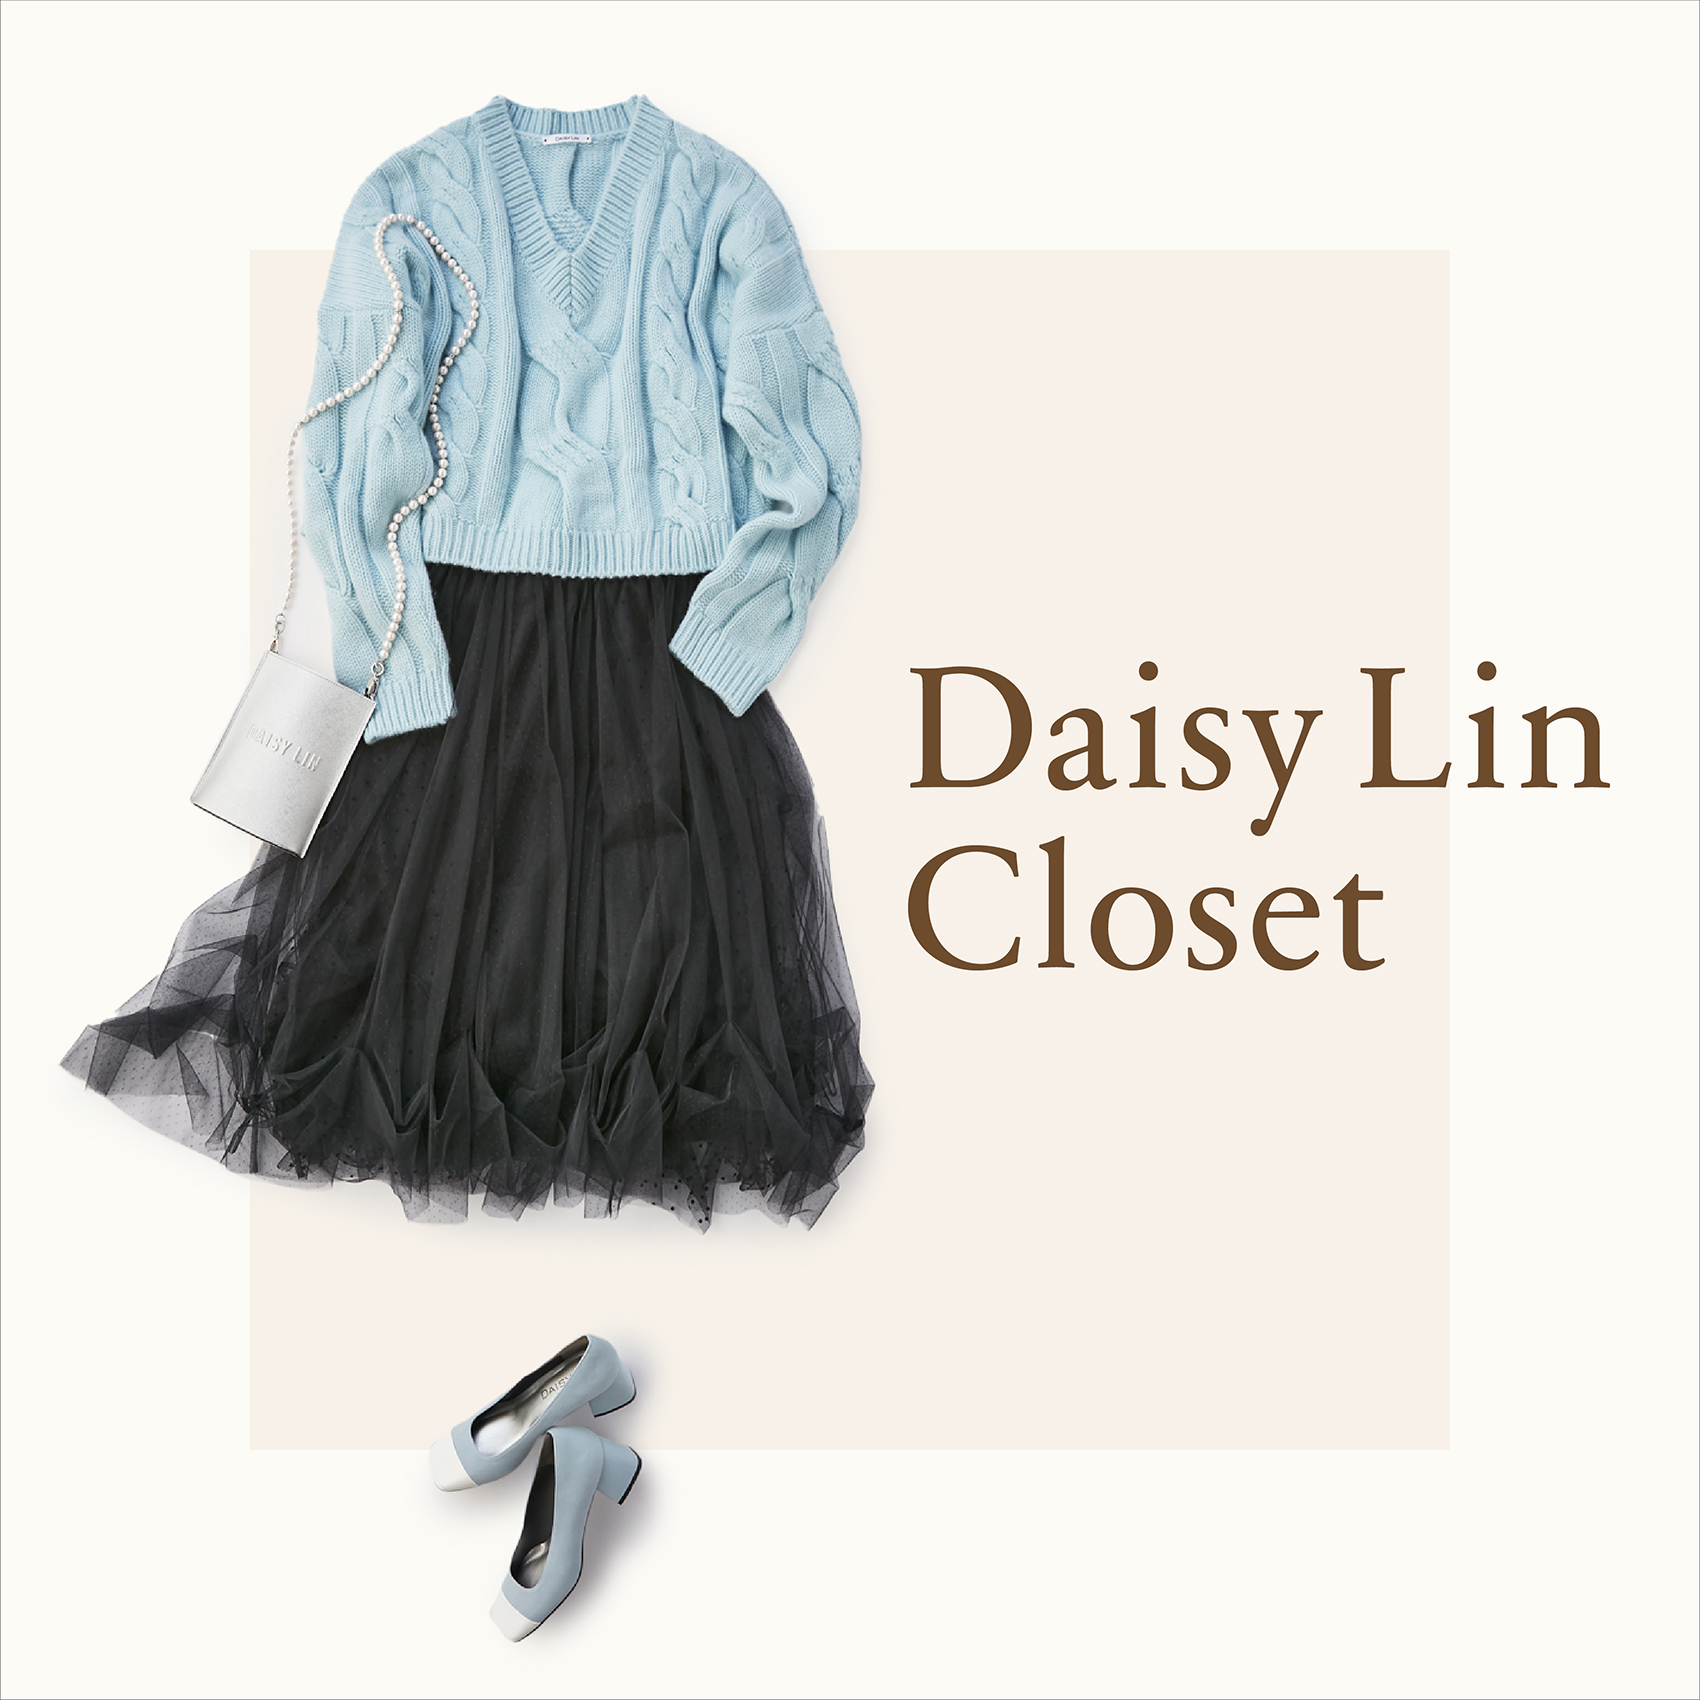 Daisy Lin Closet